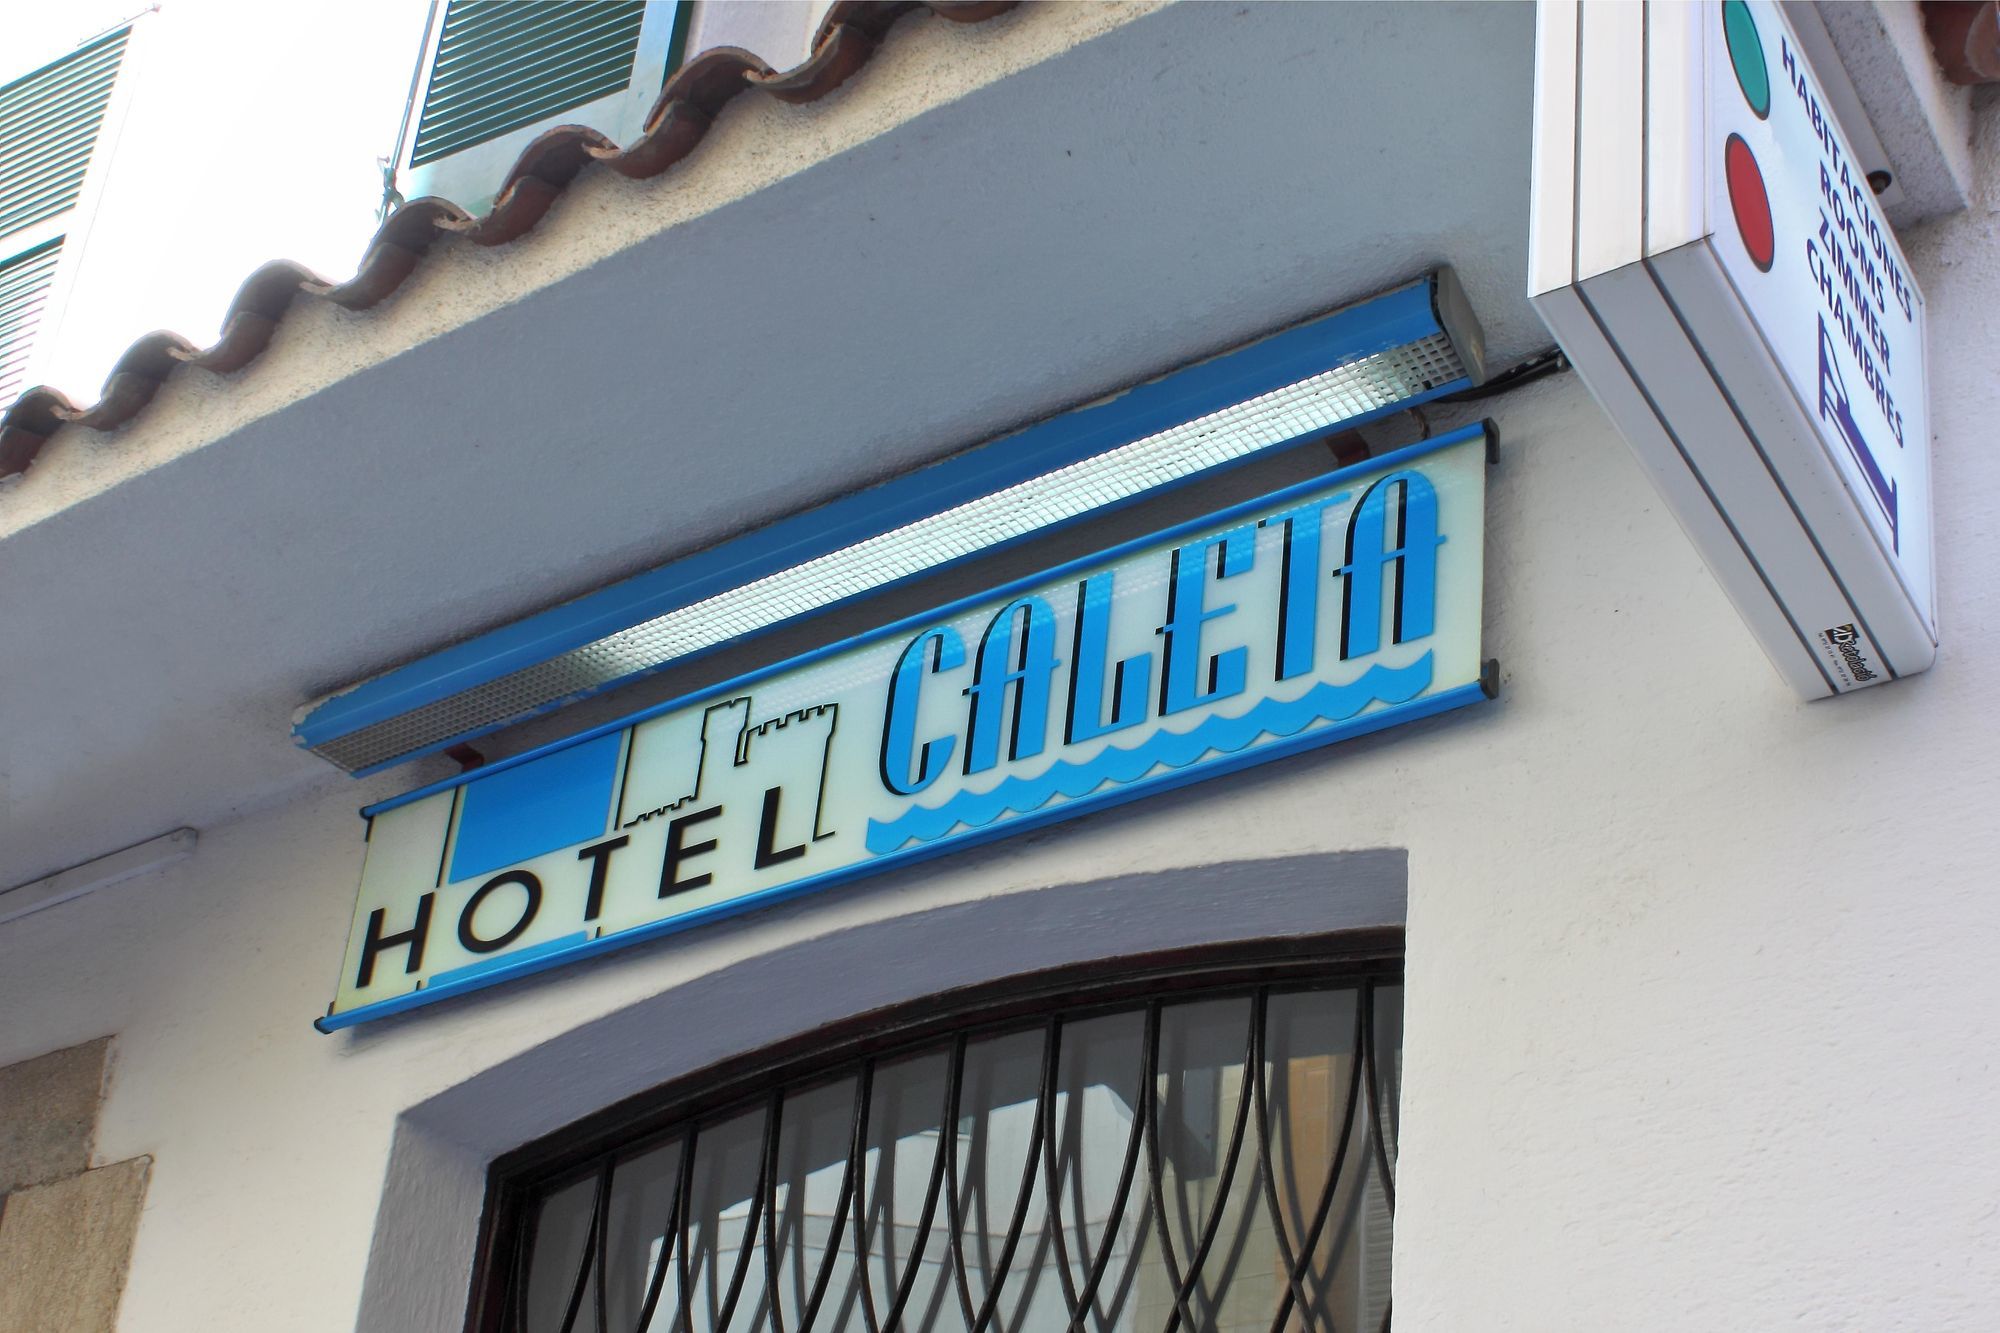 Hotel Caleta Lloret de Mar Exterior photo